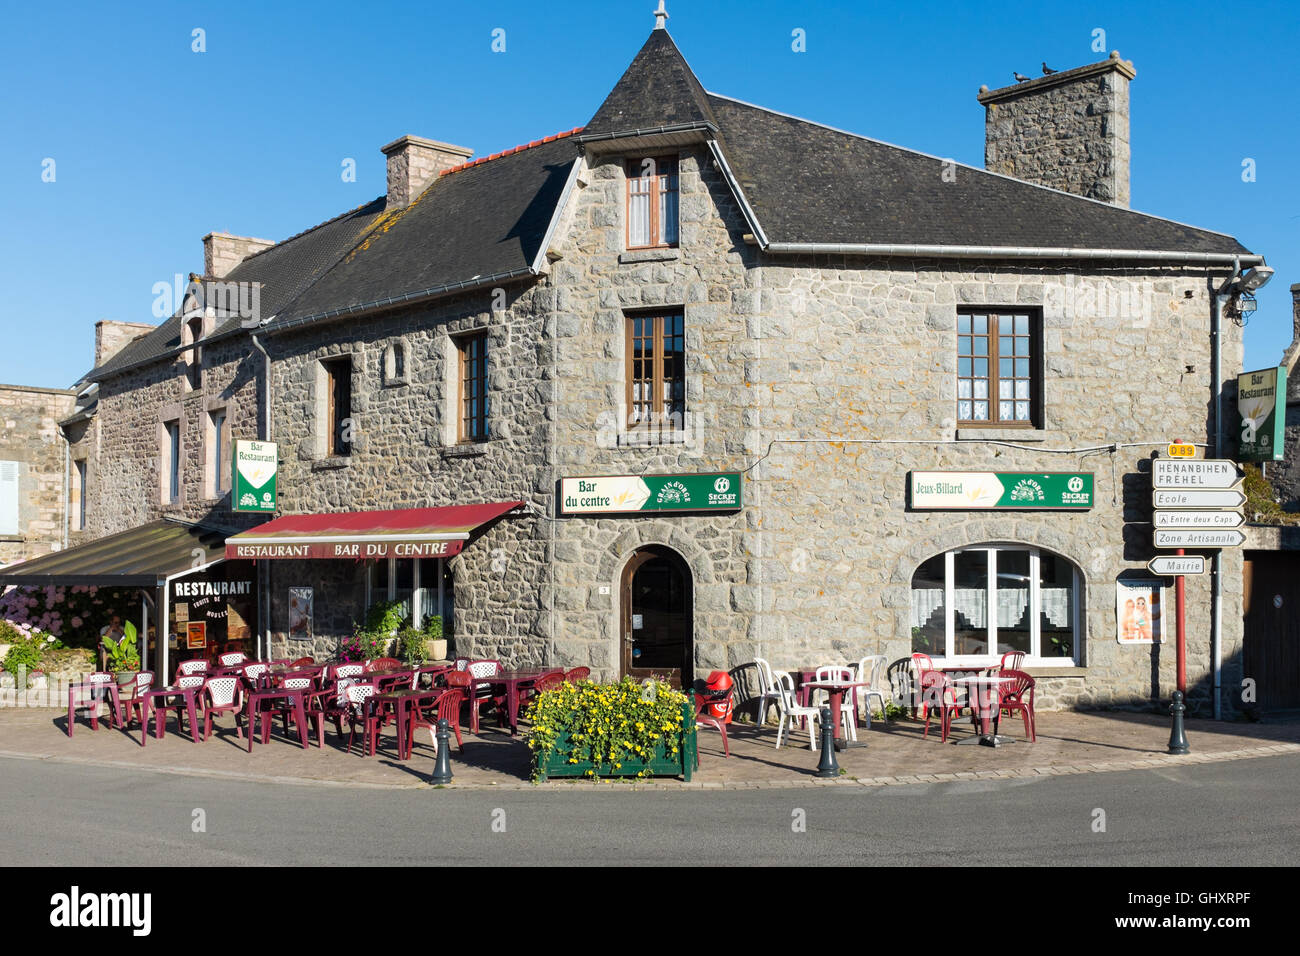 Bar des Sports nel centro di Plurien, un piccolo comune della Cotes-d'Armor  dipartimento di Brittany nel nord ovest della Francia Foto stock - Alamy